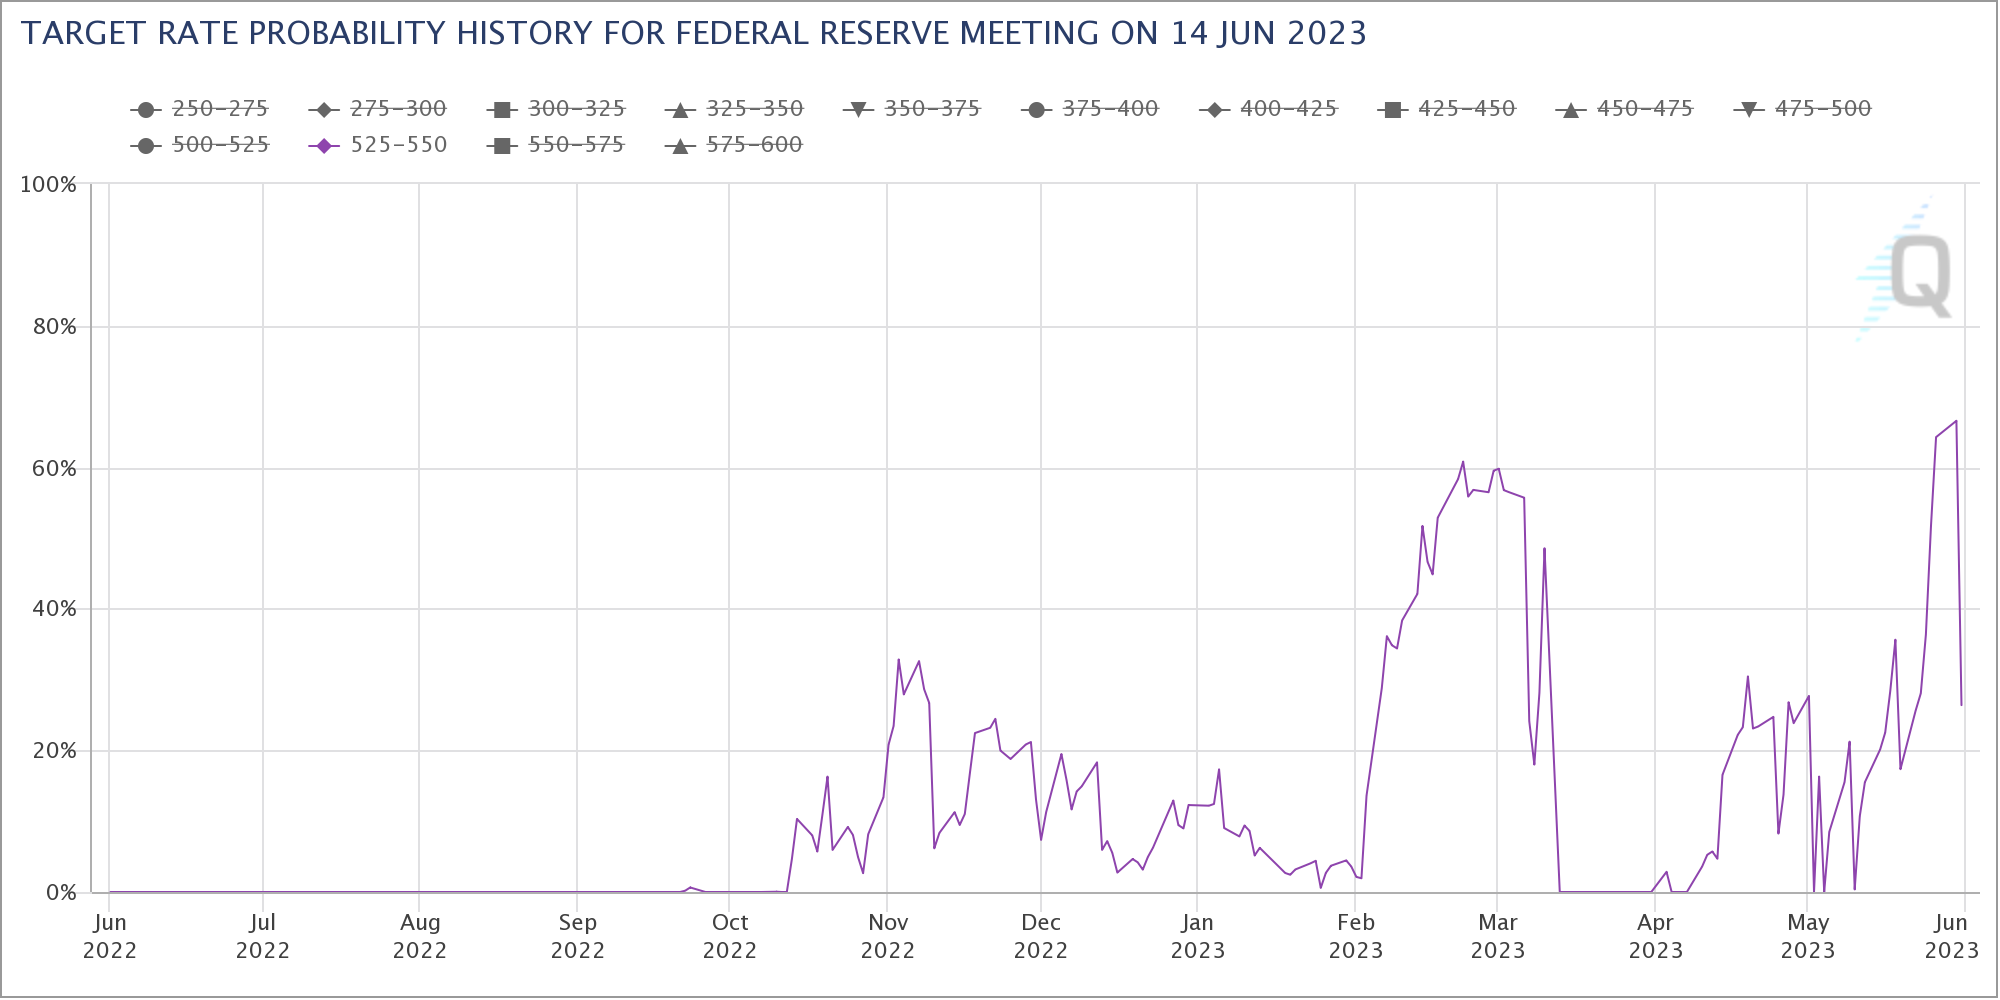 Erwartungen bezüglich einer Zinsanhebung auf der Fed-Sitzung im Juni 2023